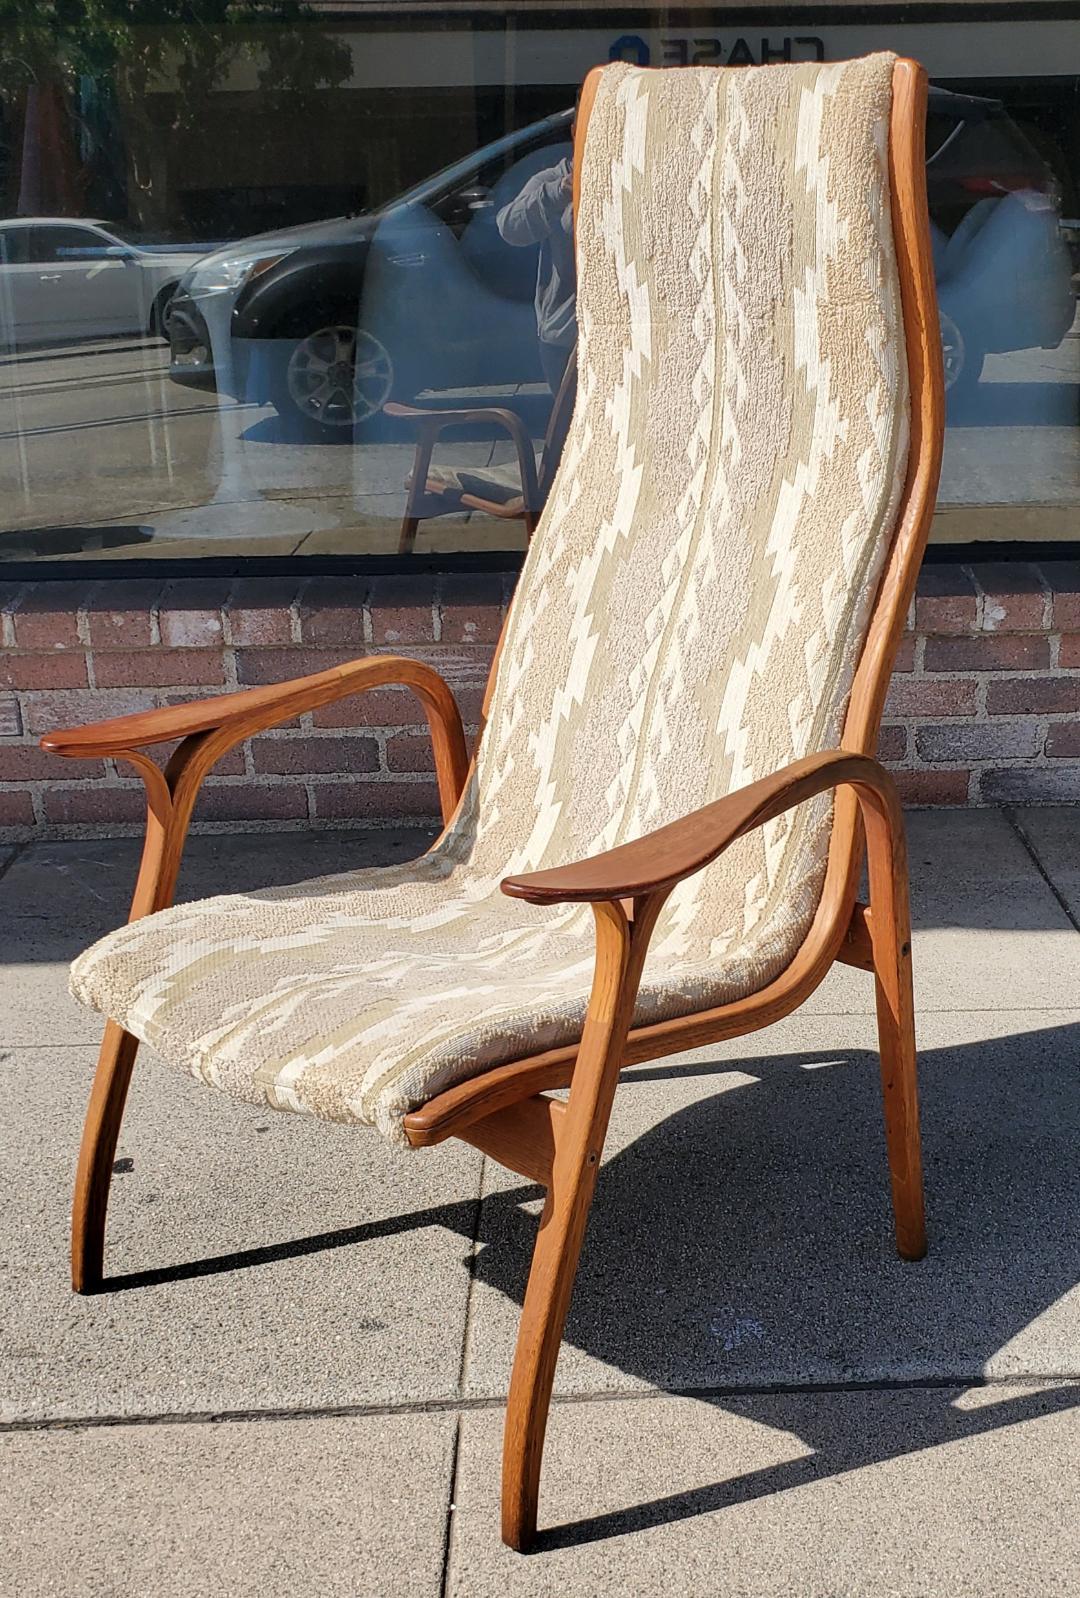 1960s Yngve Ekström Lamino Chair for Swedese Scandinavian Modern Design estampillé, Made In Sweden.

Un design scandinave moderne des années 1960 par Yngve Ekstrom est un fauteuil confortable. Le fauteuil 